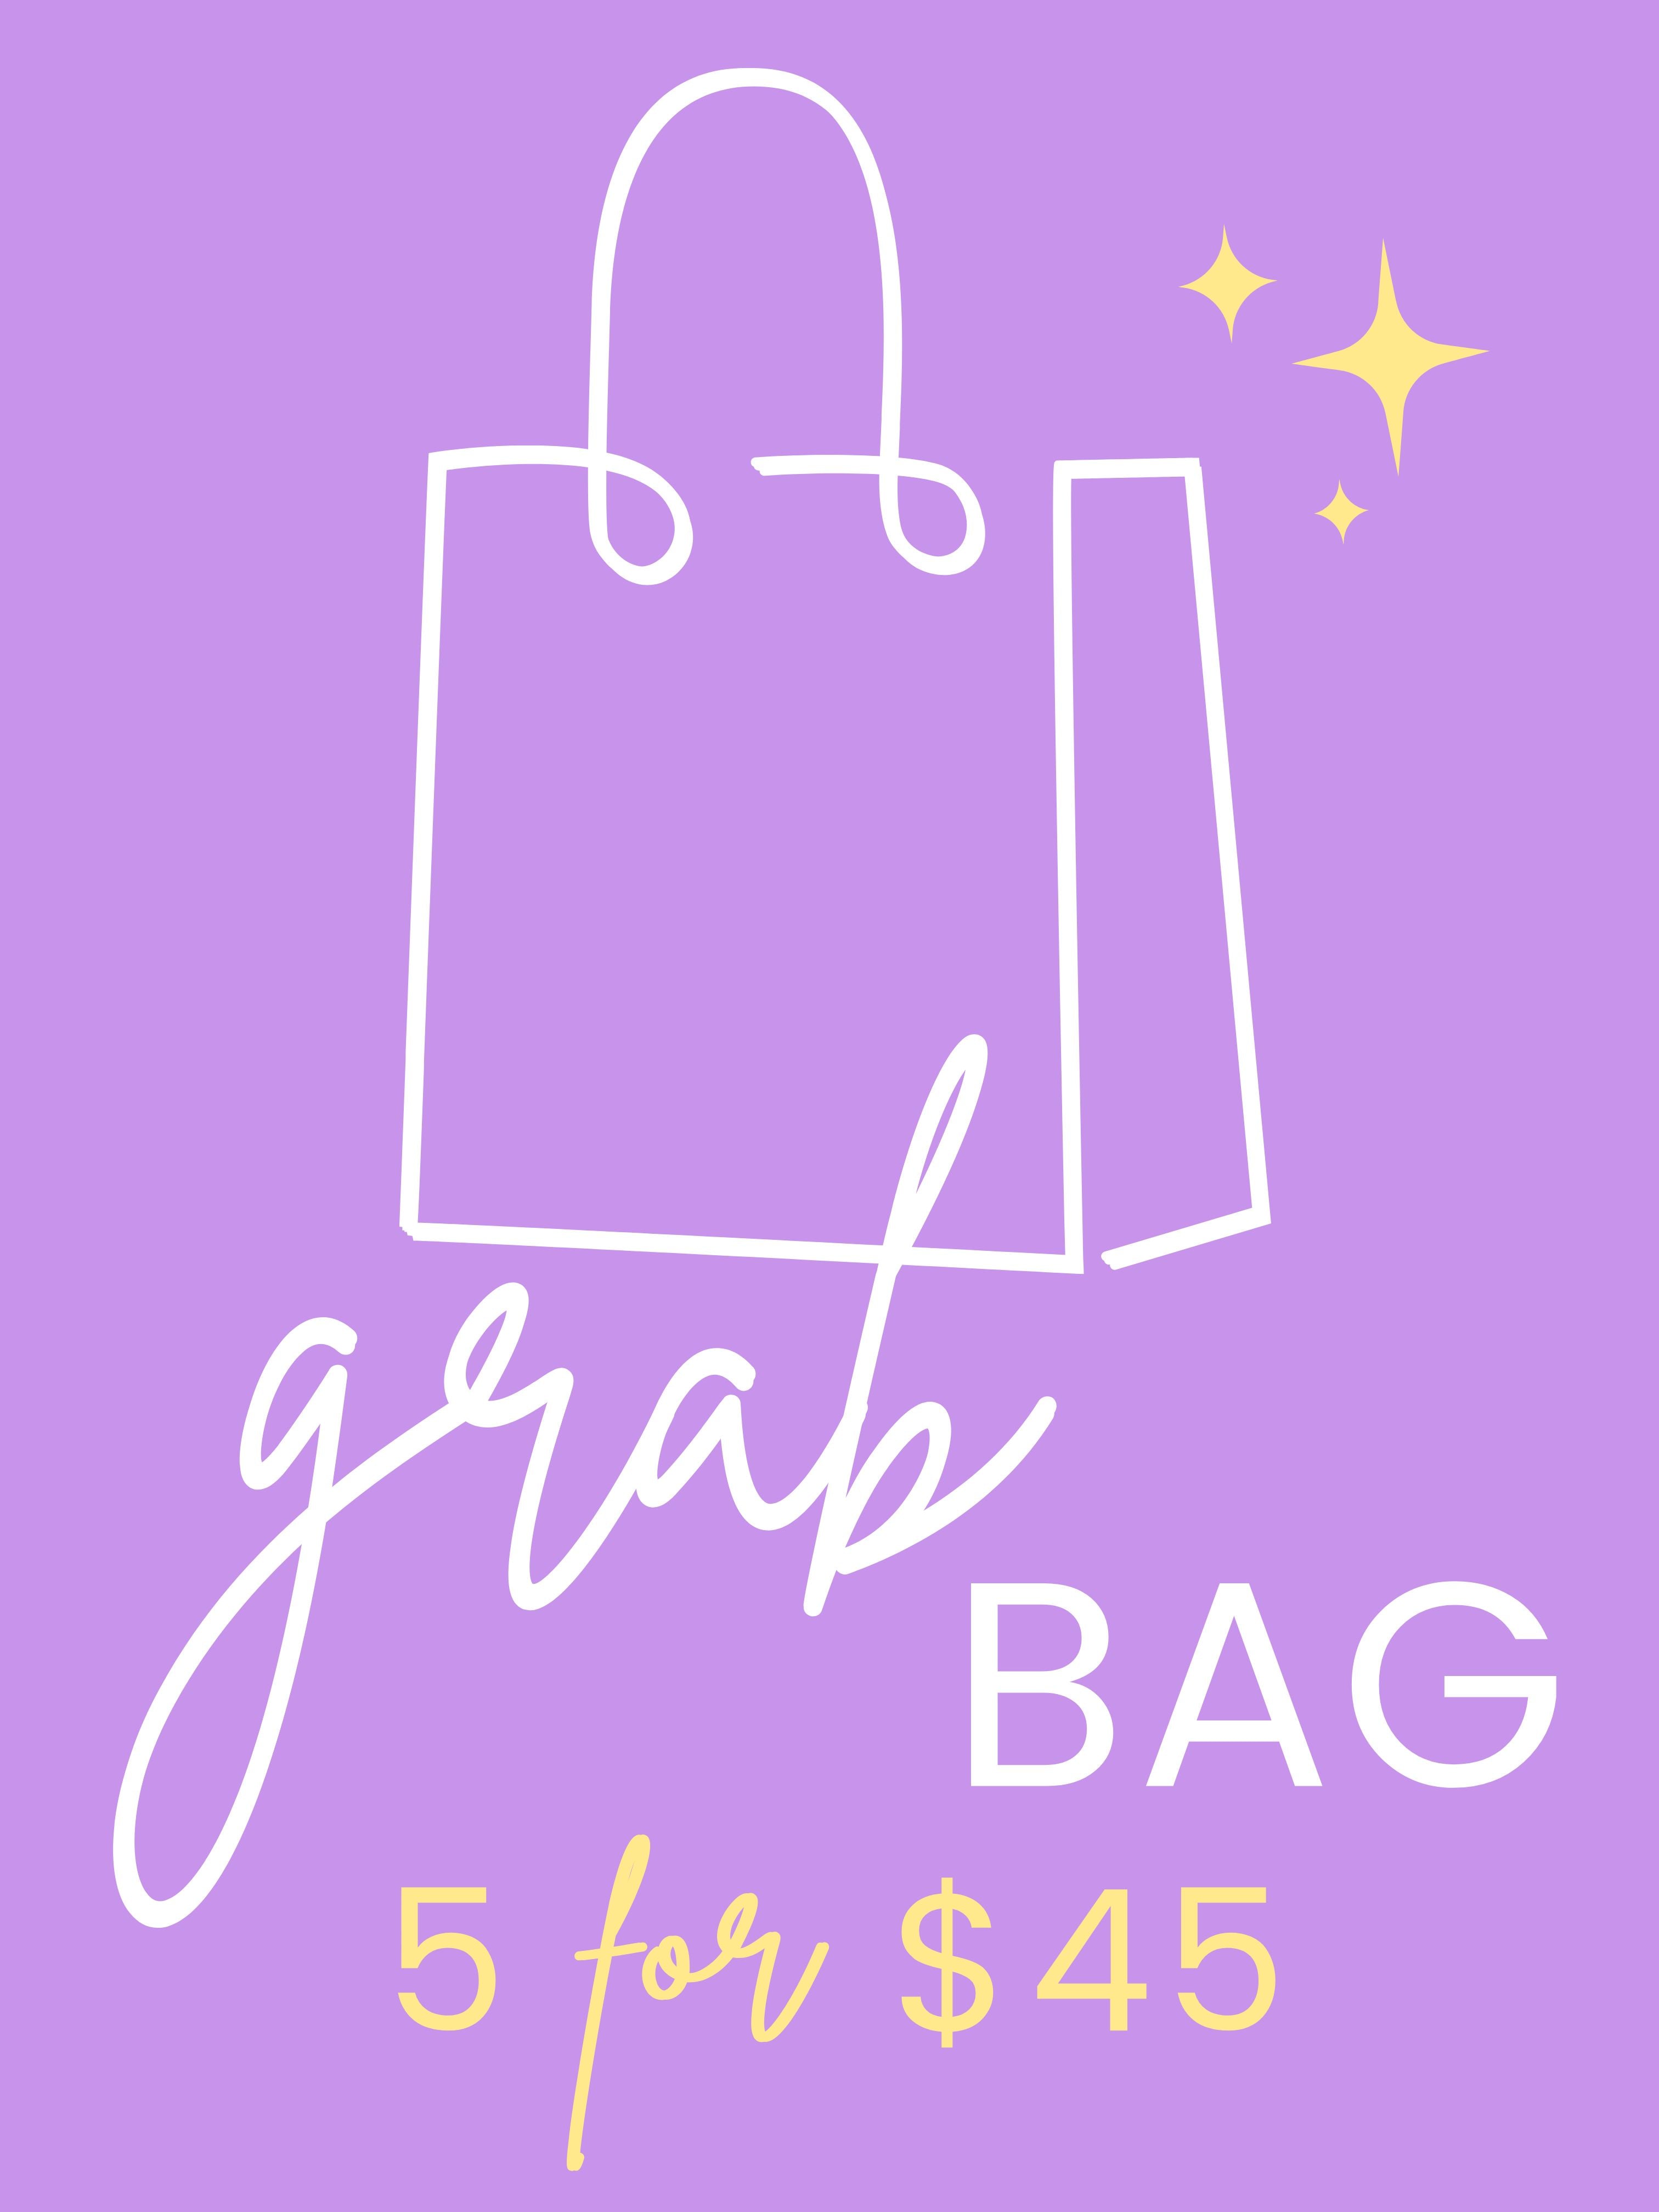 [Grab Bag] 5 for $45